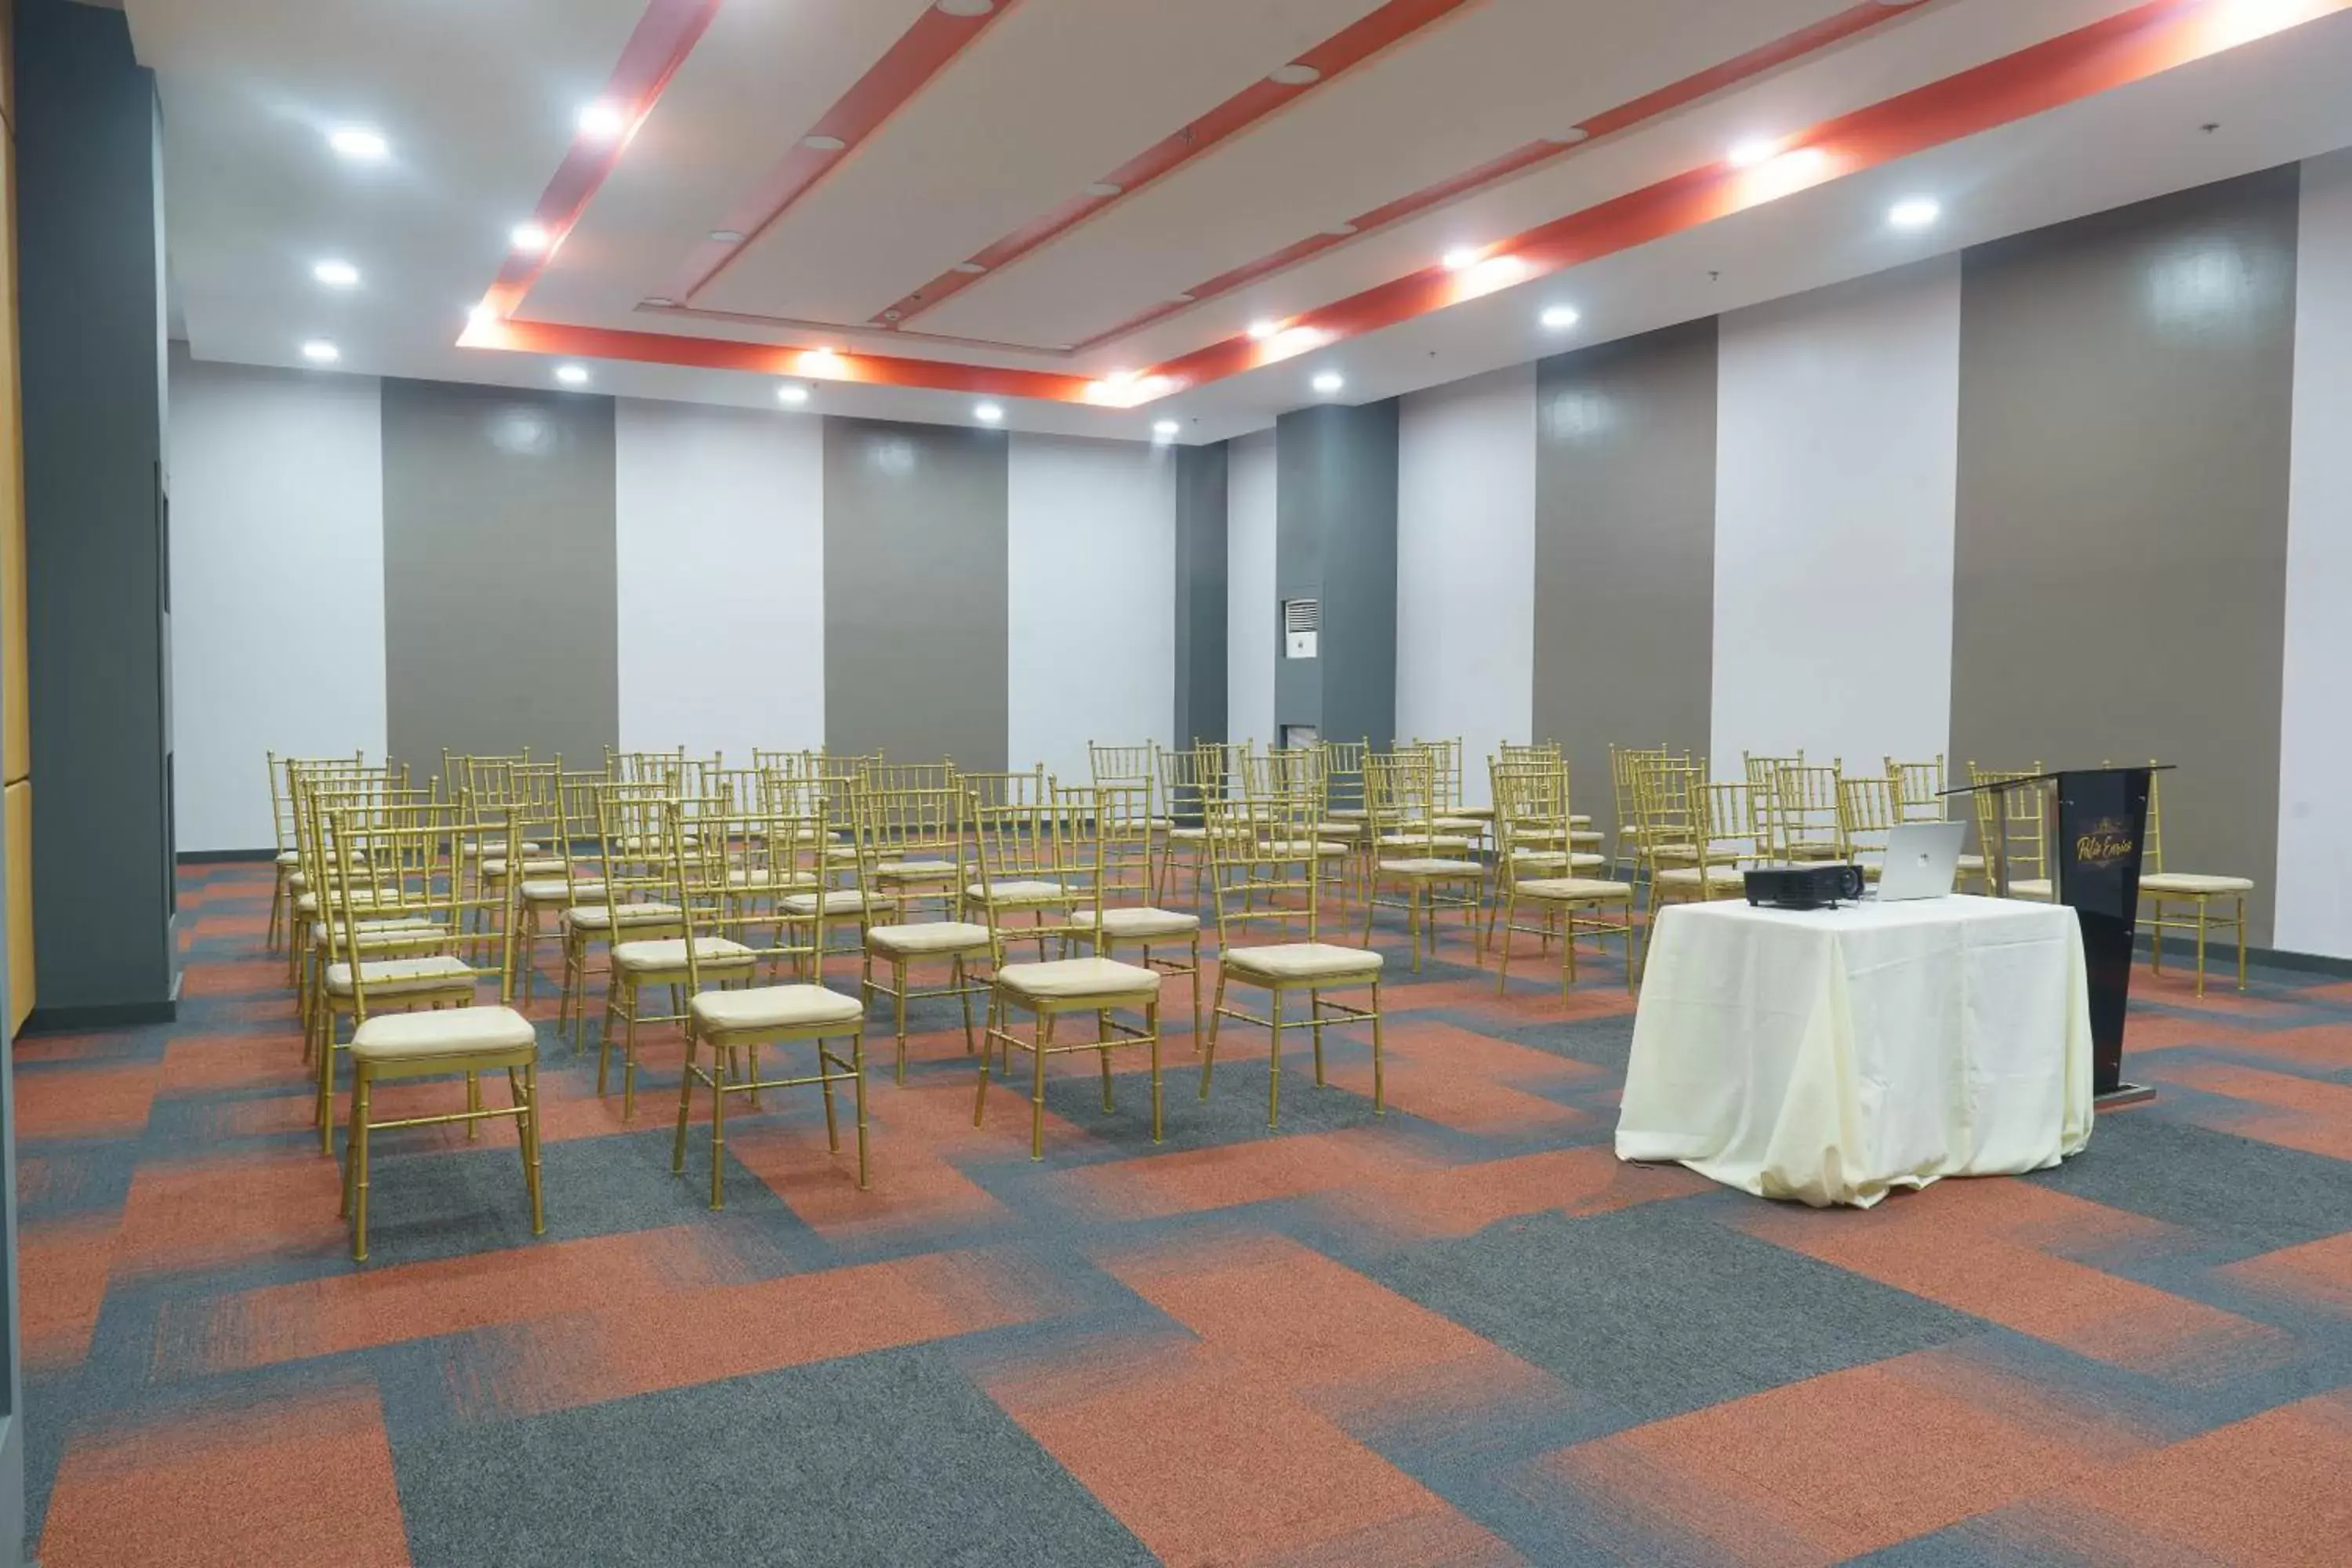 Banquet/Function facilities, Banquet Facilities in Go Hotels Plus Tuguegarao